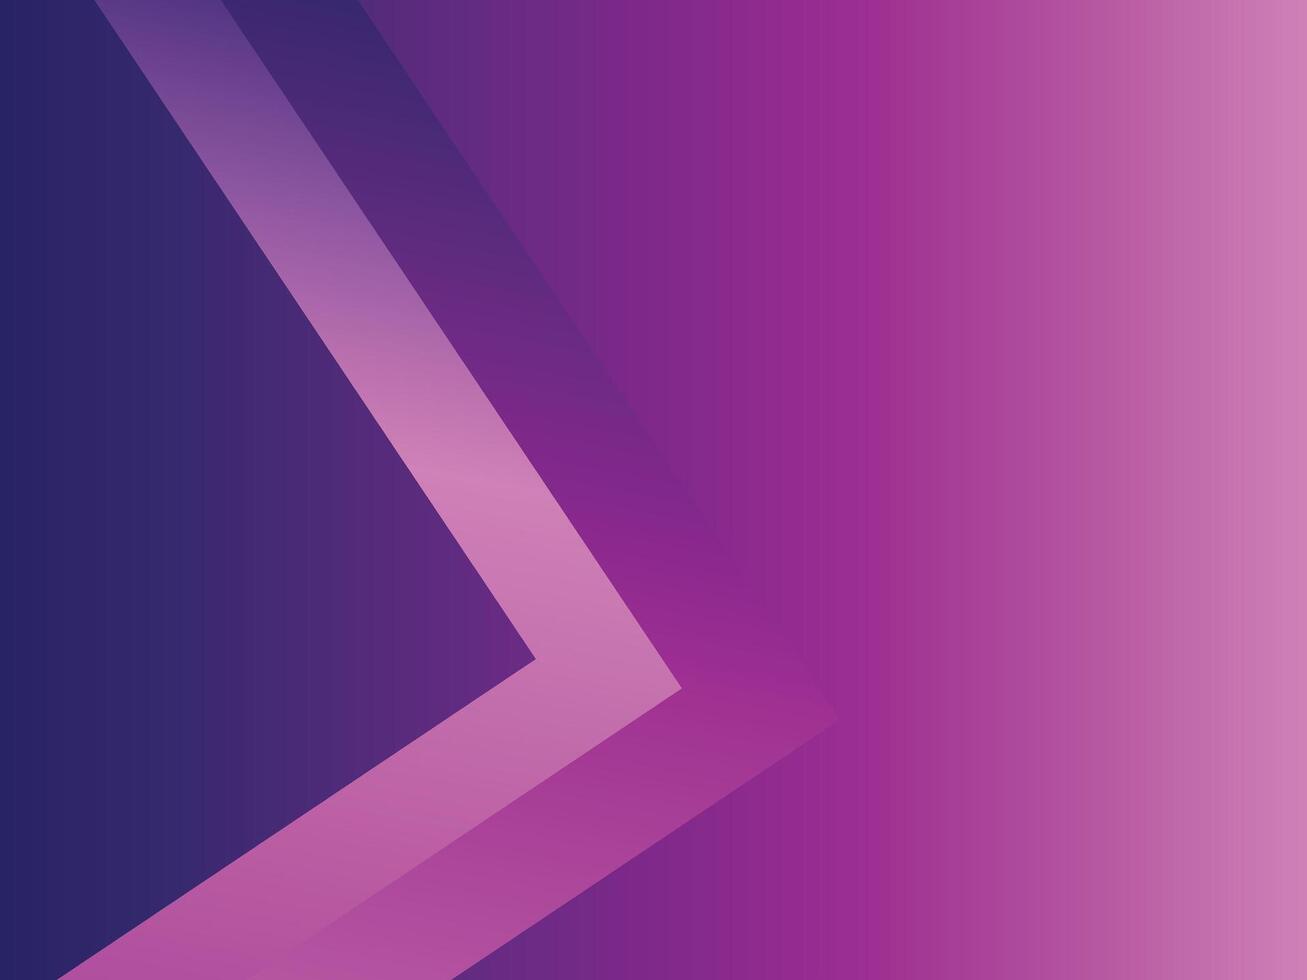 abstrakt lila und Rosa Farbe, modern Design Streifen Hintergrund mit geometrisch runden Form. vektor